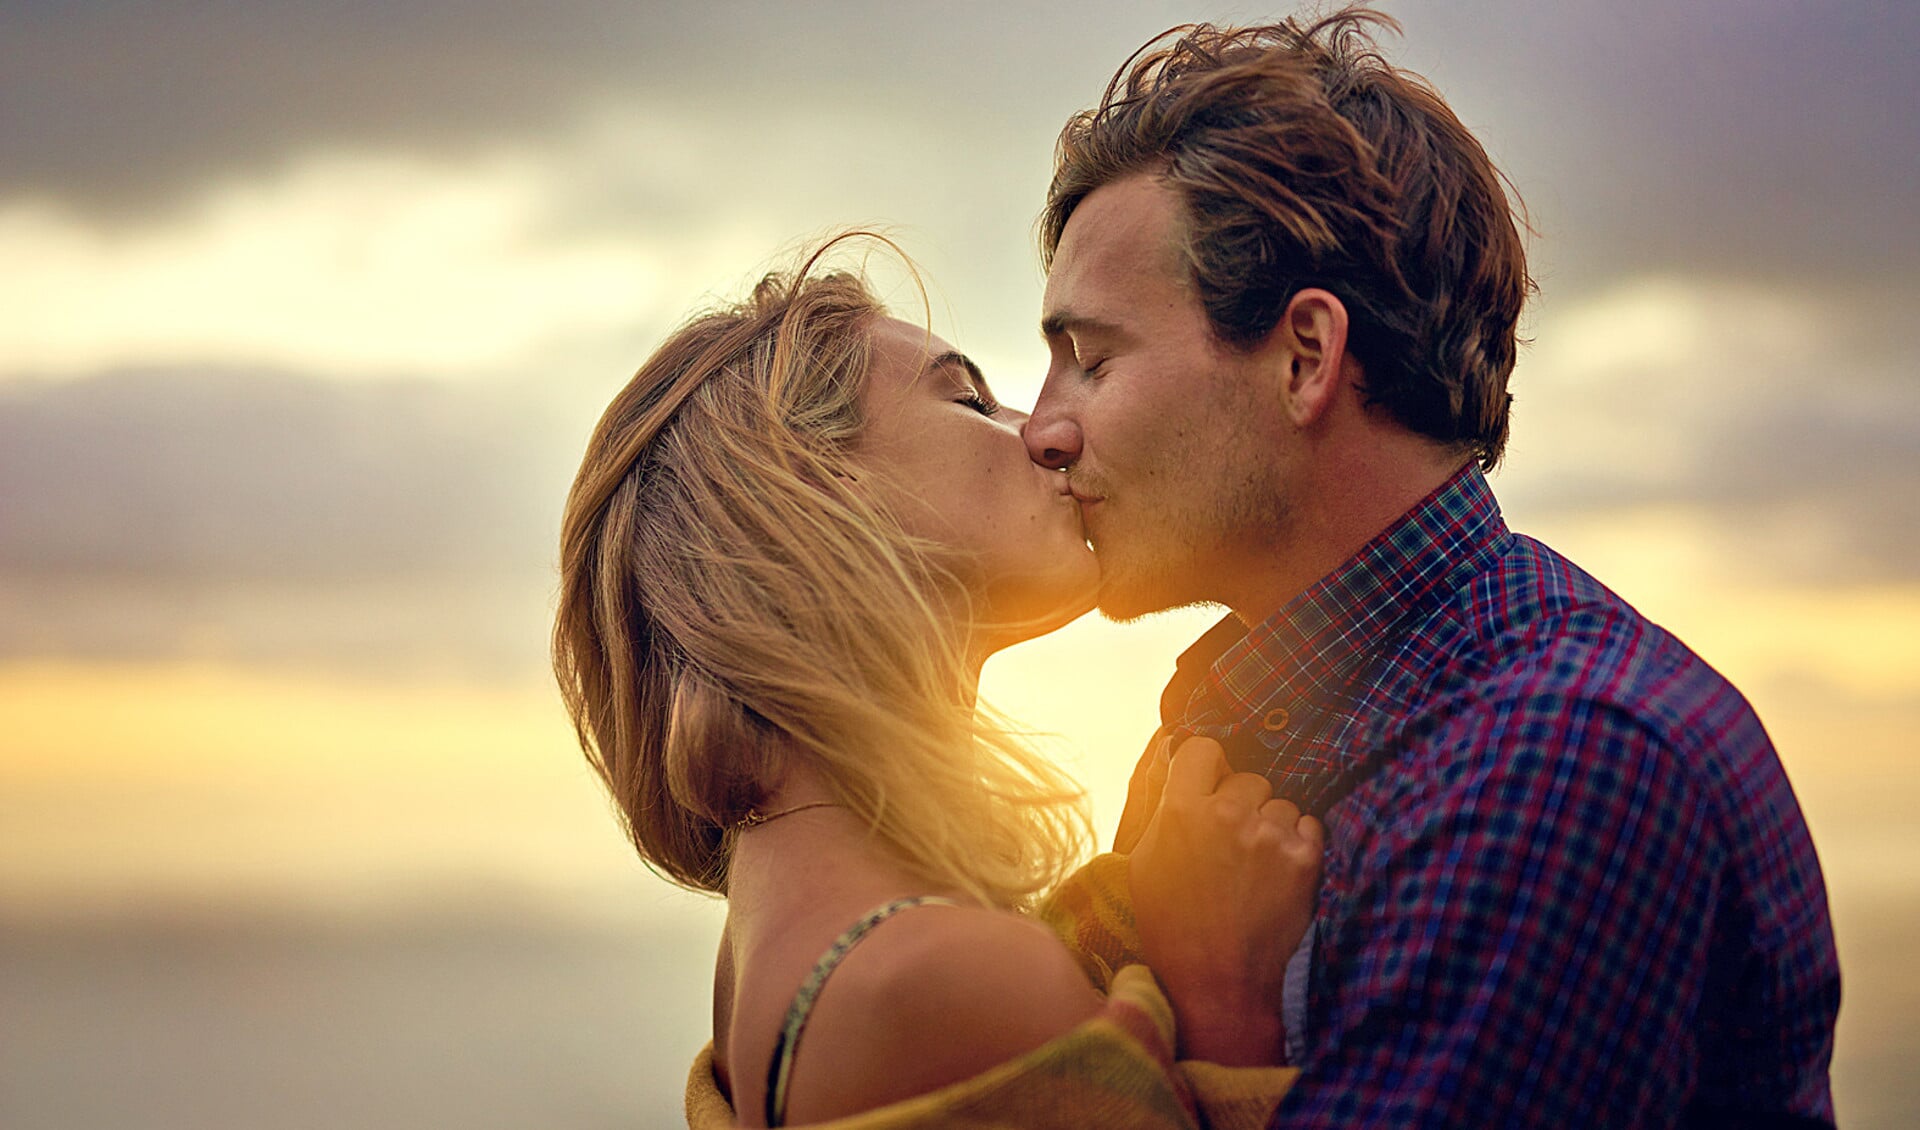 Mensen die elkaar regelmatig kussen, ervaren minder stress en hebben minder ruzie.